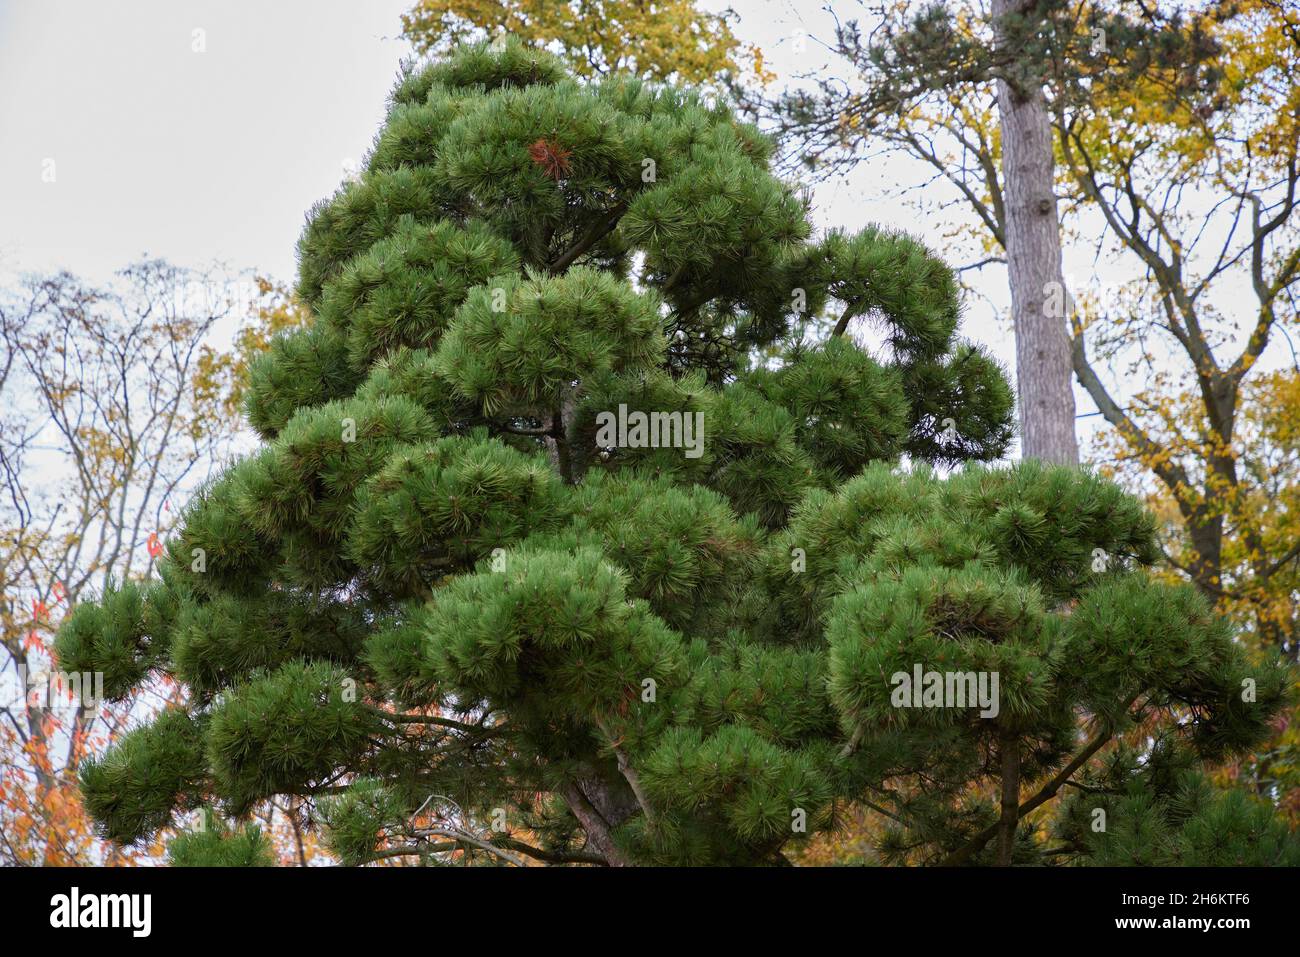 Pinus Nigra ssp. salzmanii. Stock Photo